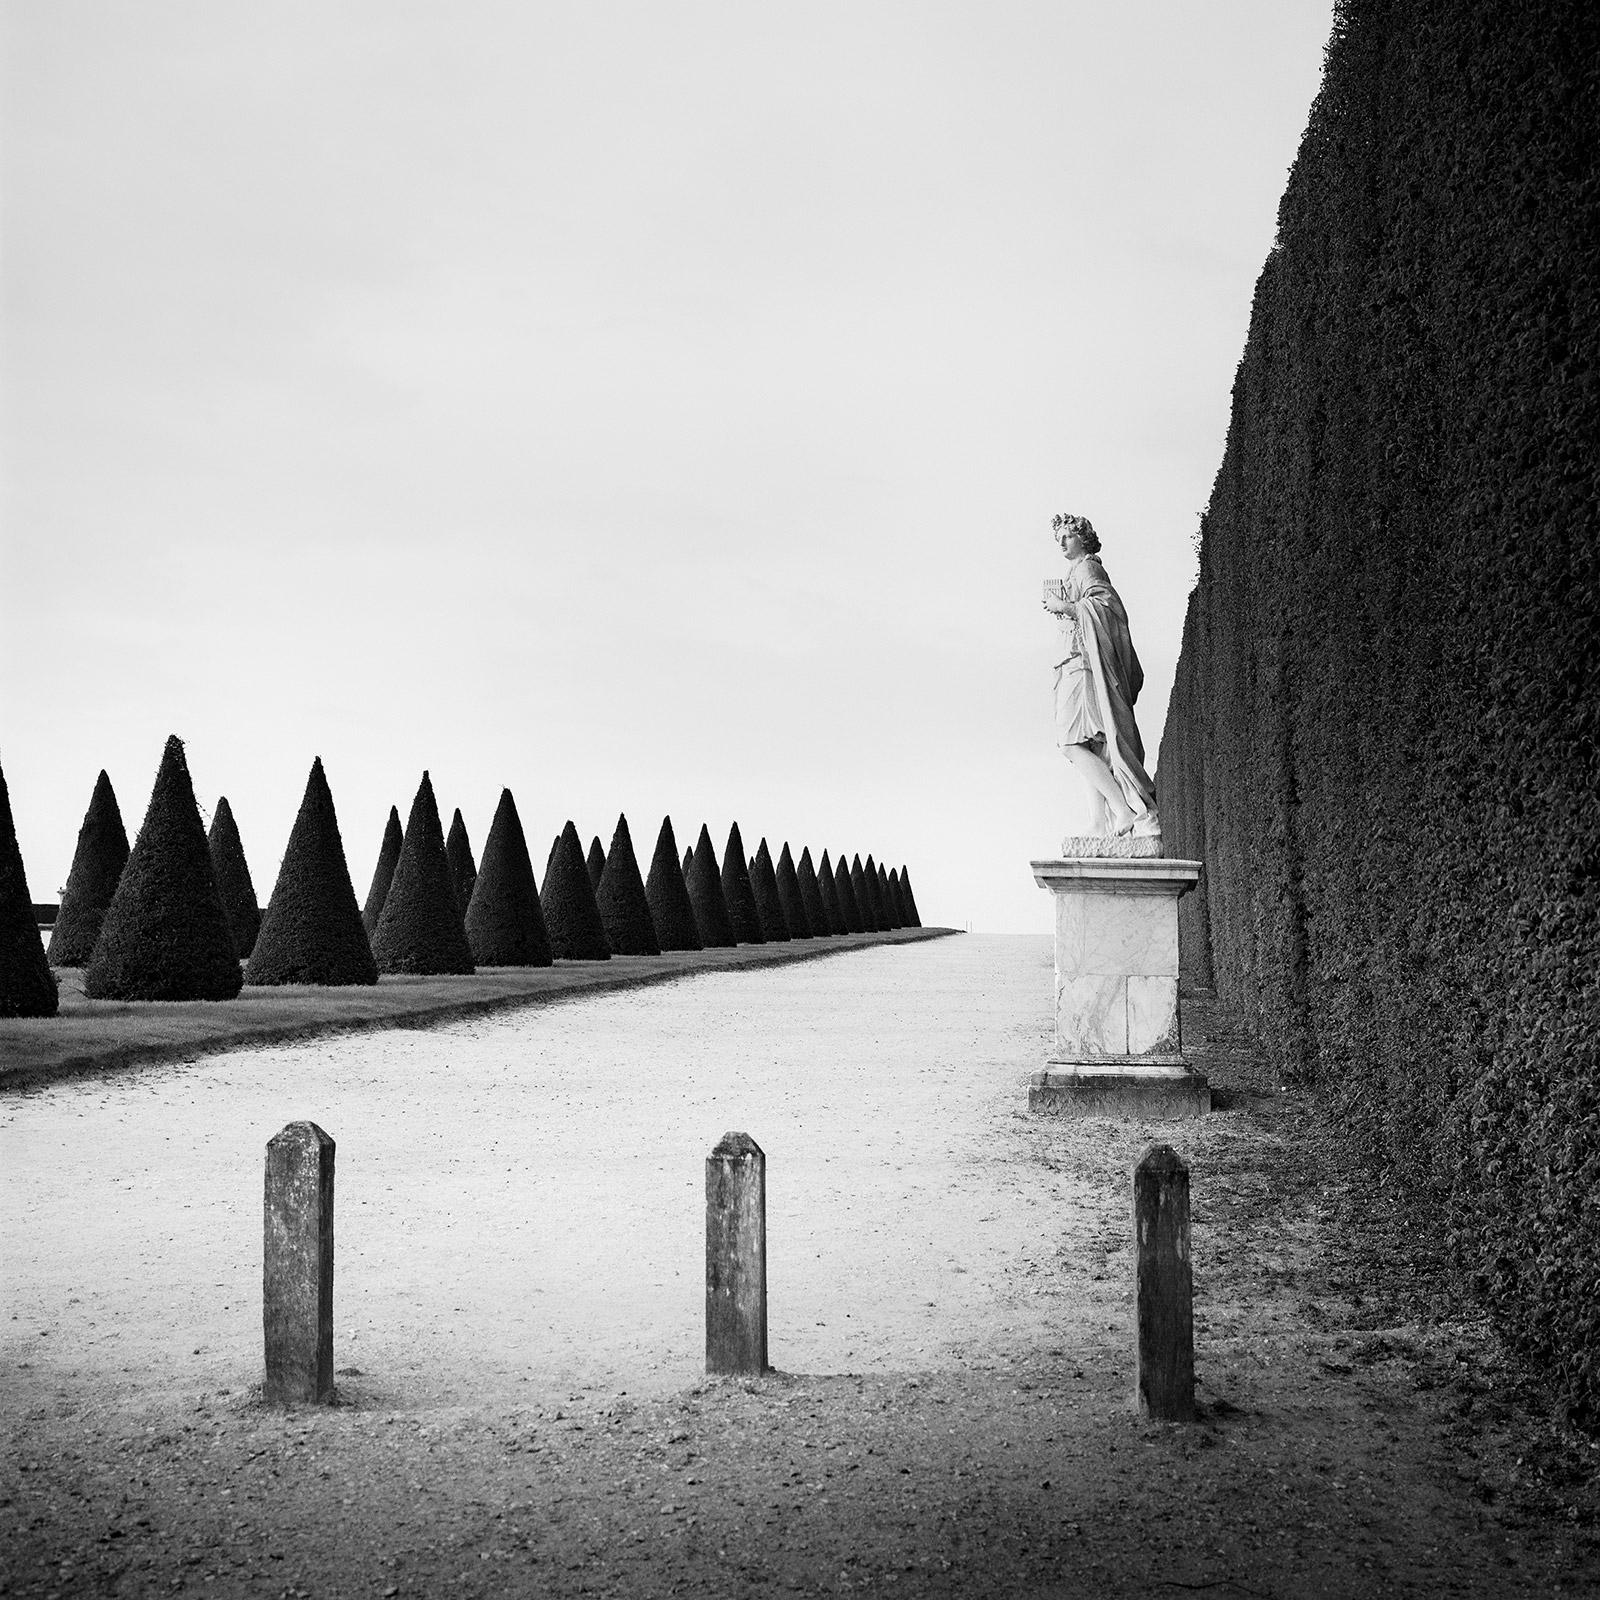 Landscape Photograph Gerald Berghammer - The Garden of Versailles, Paris, France, photographie de paysage en noir et blanc